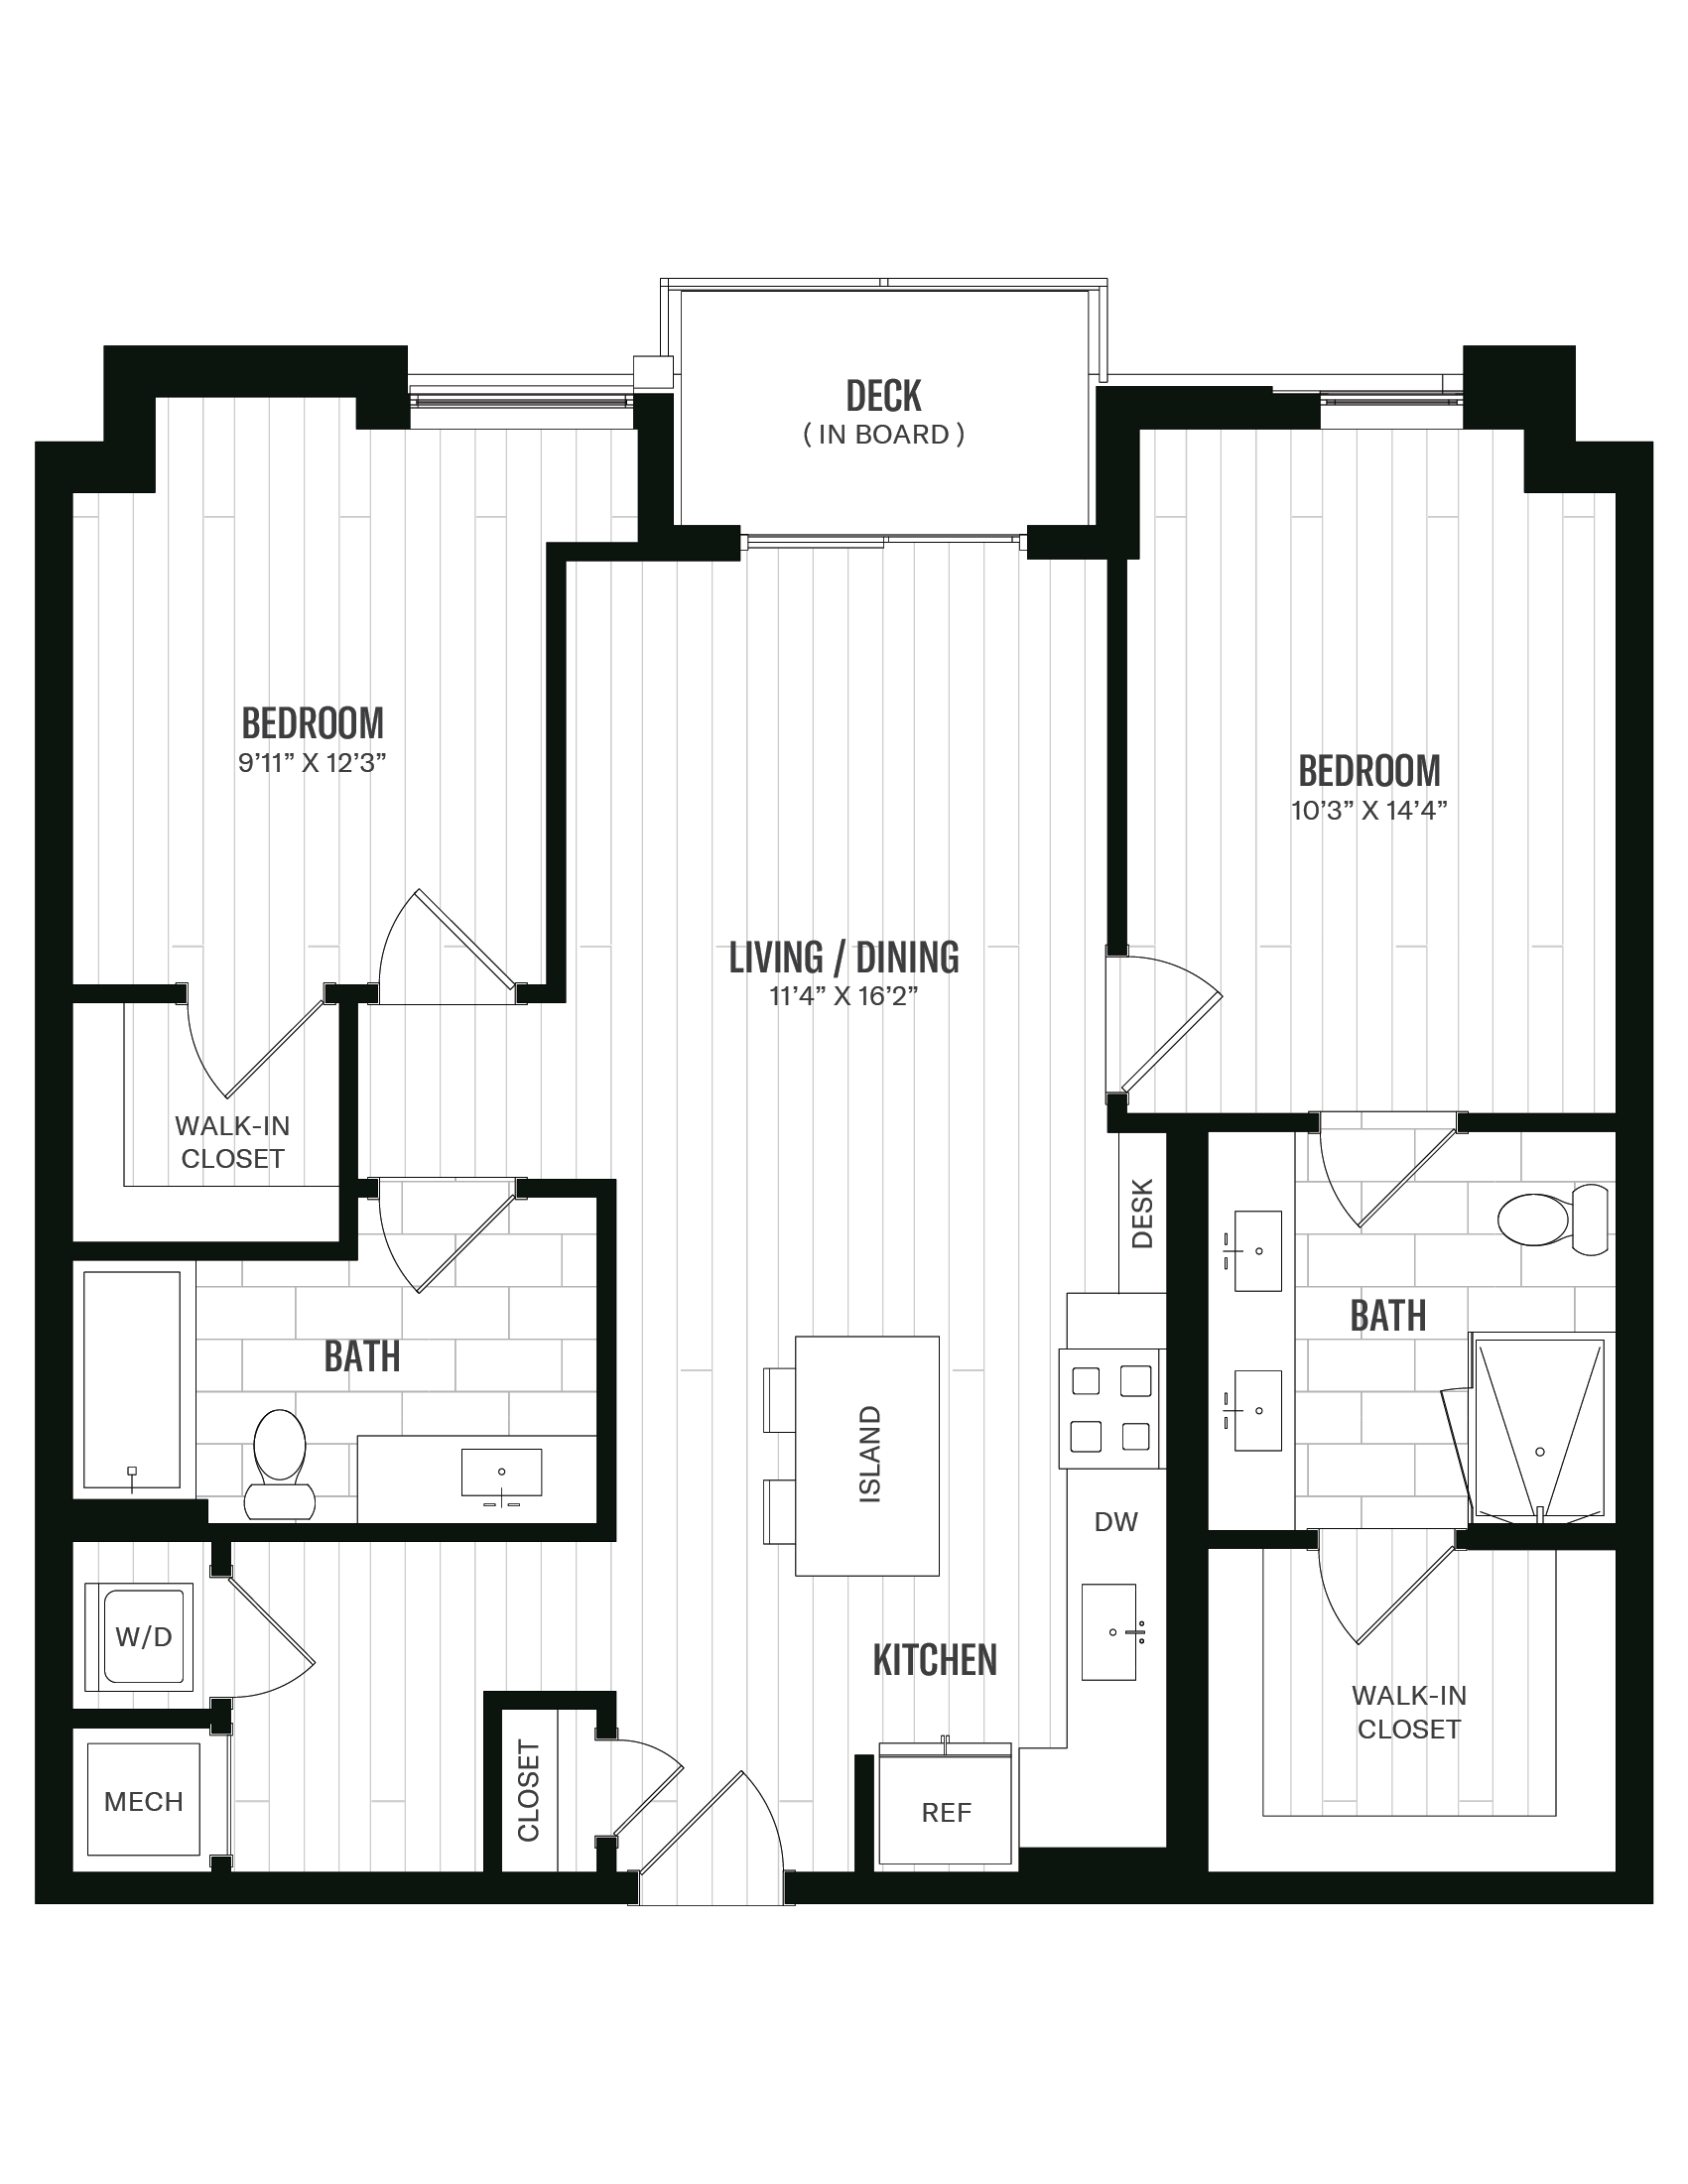 Floorplan image of unit 259